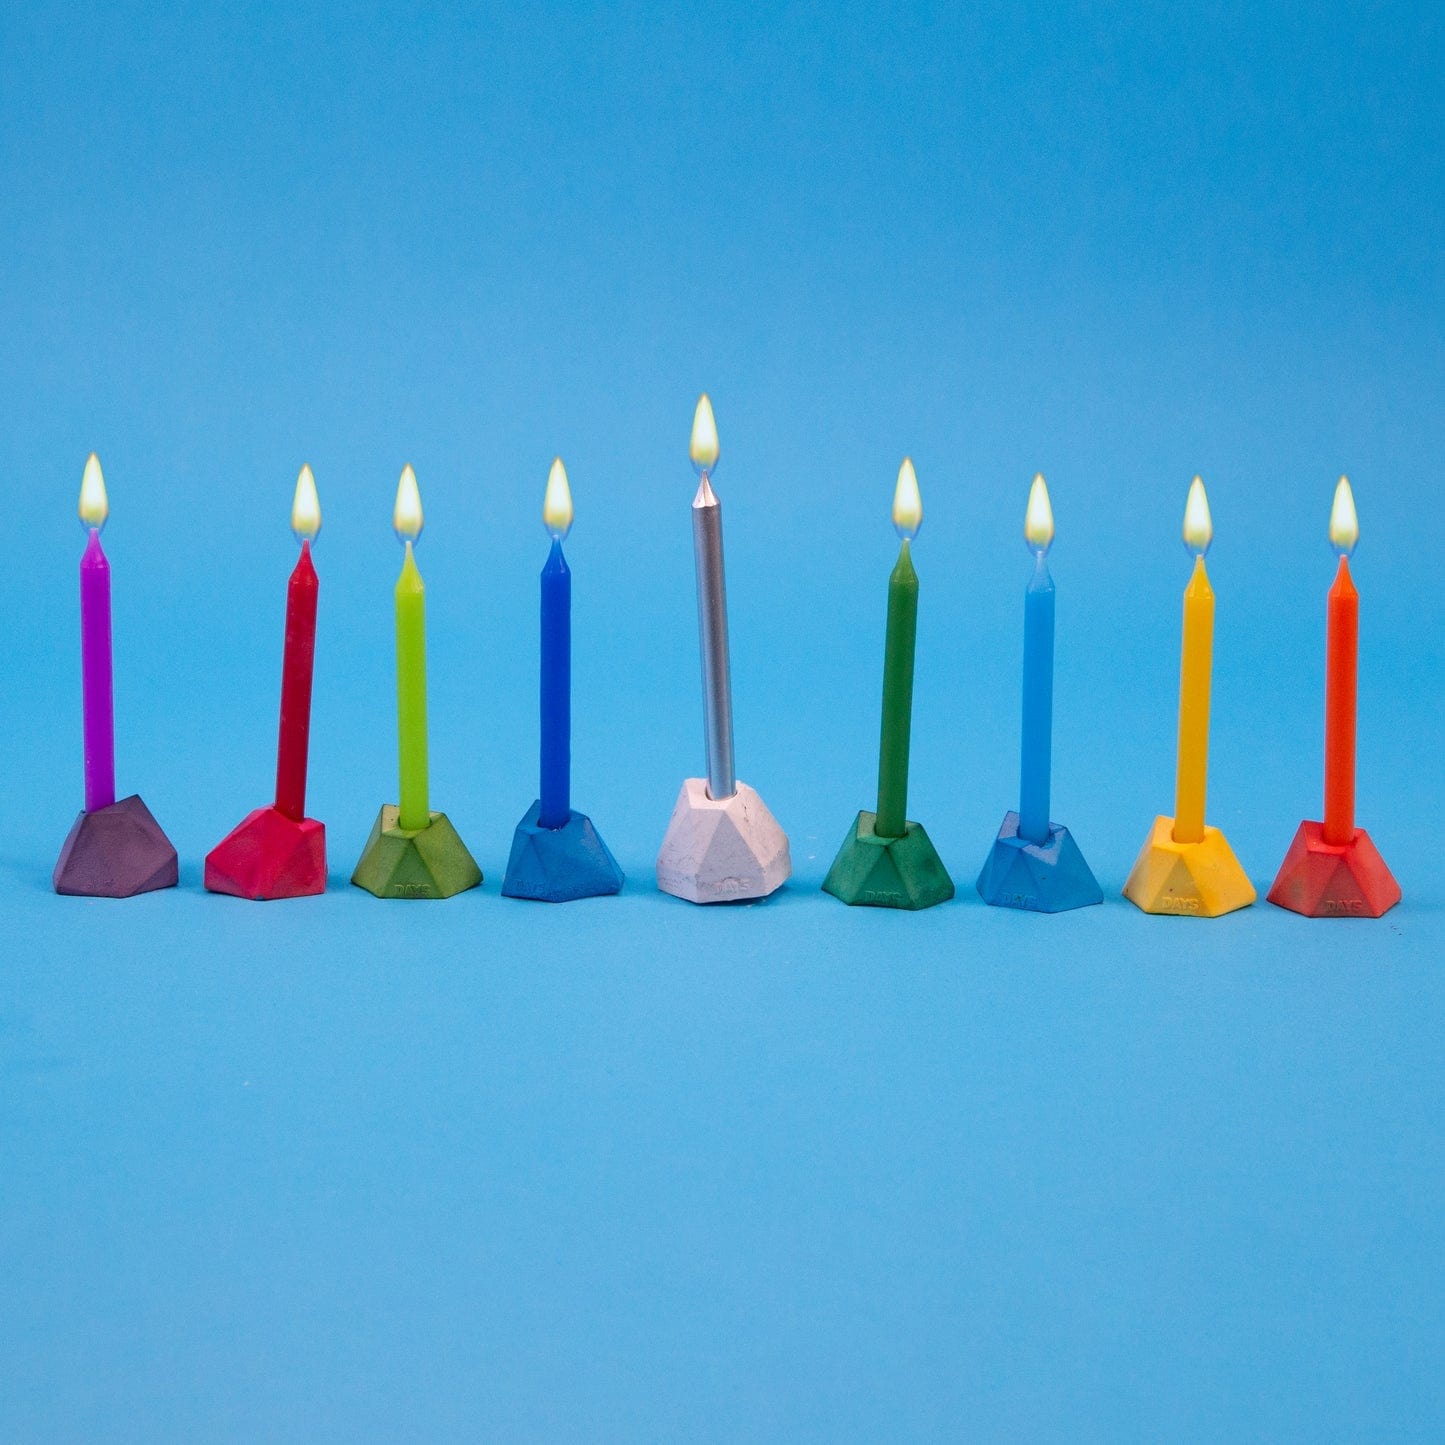 3D Paper Candles - Make a Menorah or Centerpiece! - Jennifer Maker